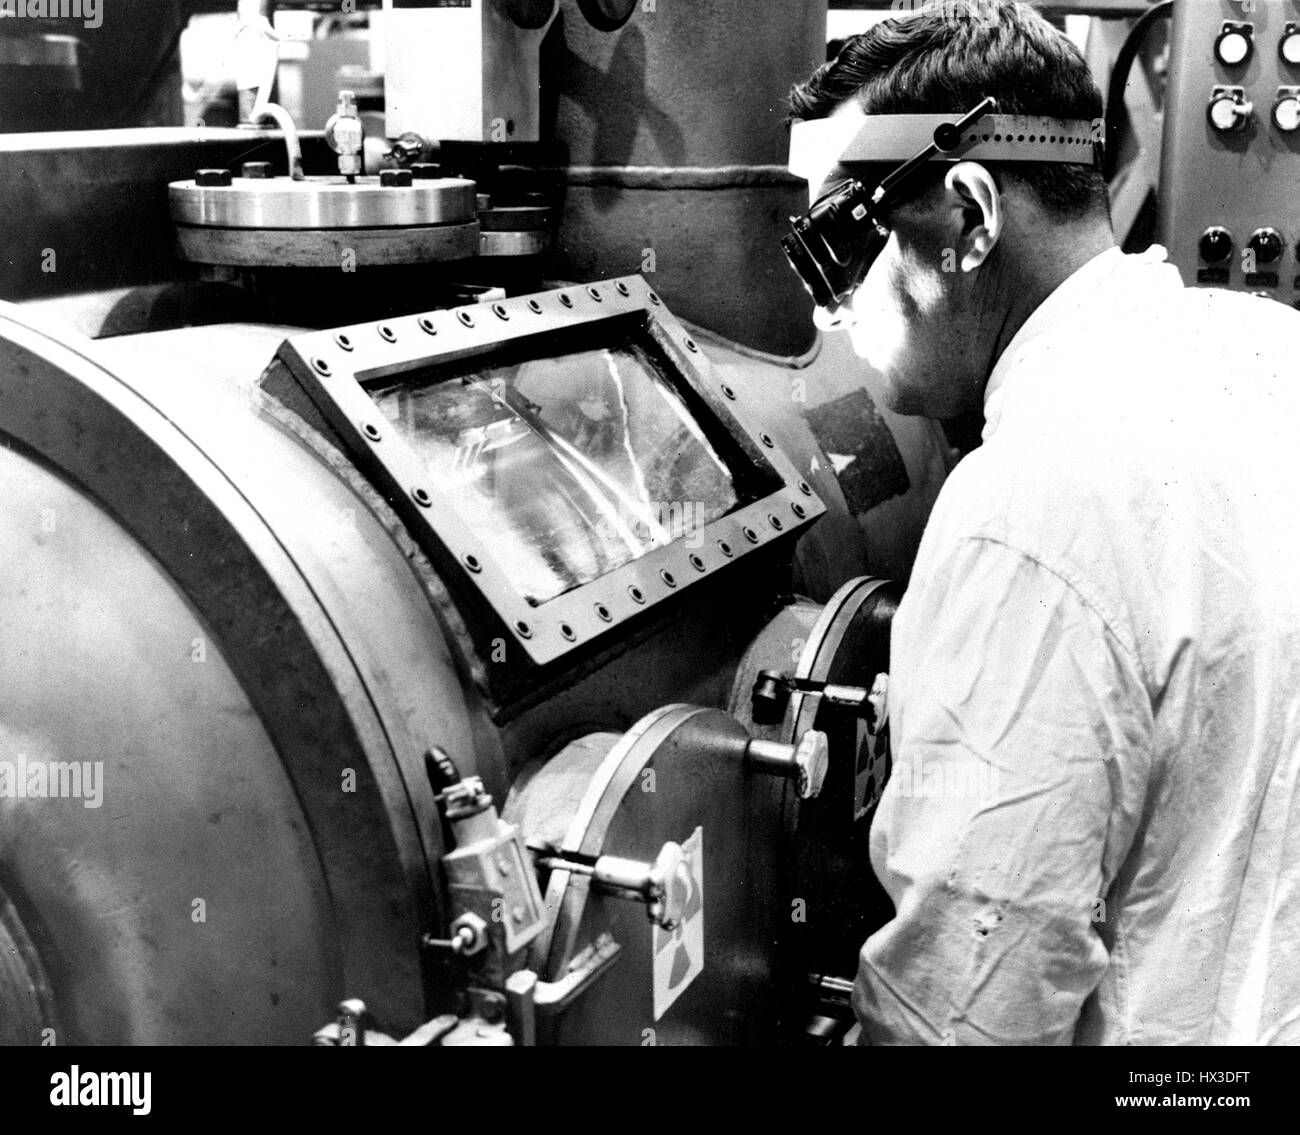 Saldatura a fascio di elettroni, sviluppate principalmente per la fabbricazione di elementi combustibili nucleari, è stata adattata per l'uso in tutte le aree di saldatura industriale, Richland, Washington, 1966. Immagine cortesia del Dipartimento Americano di Energia. Foto Stock